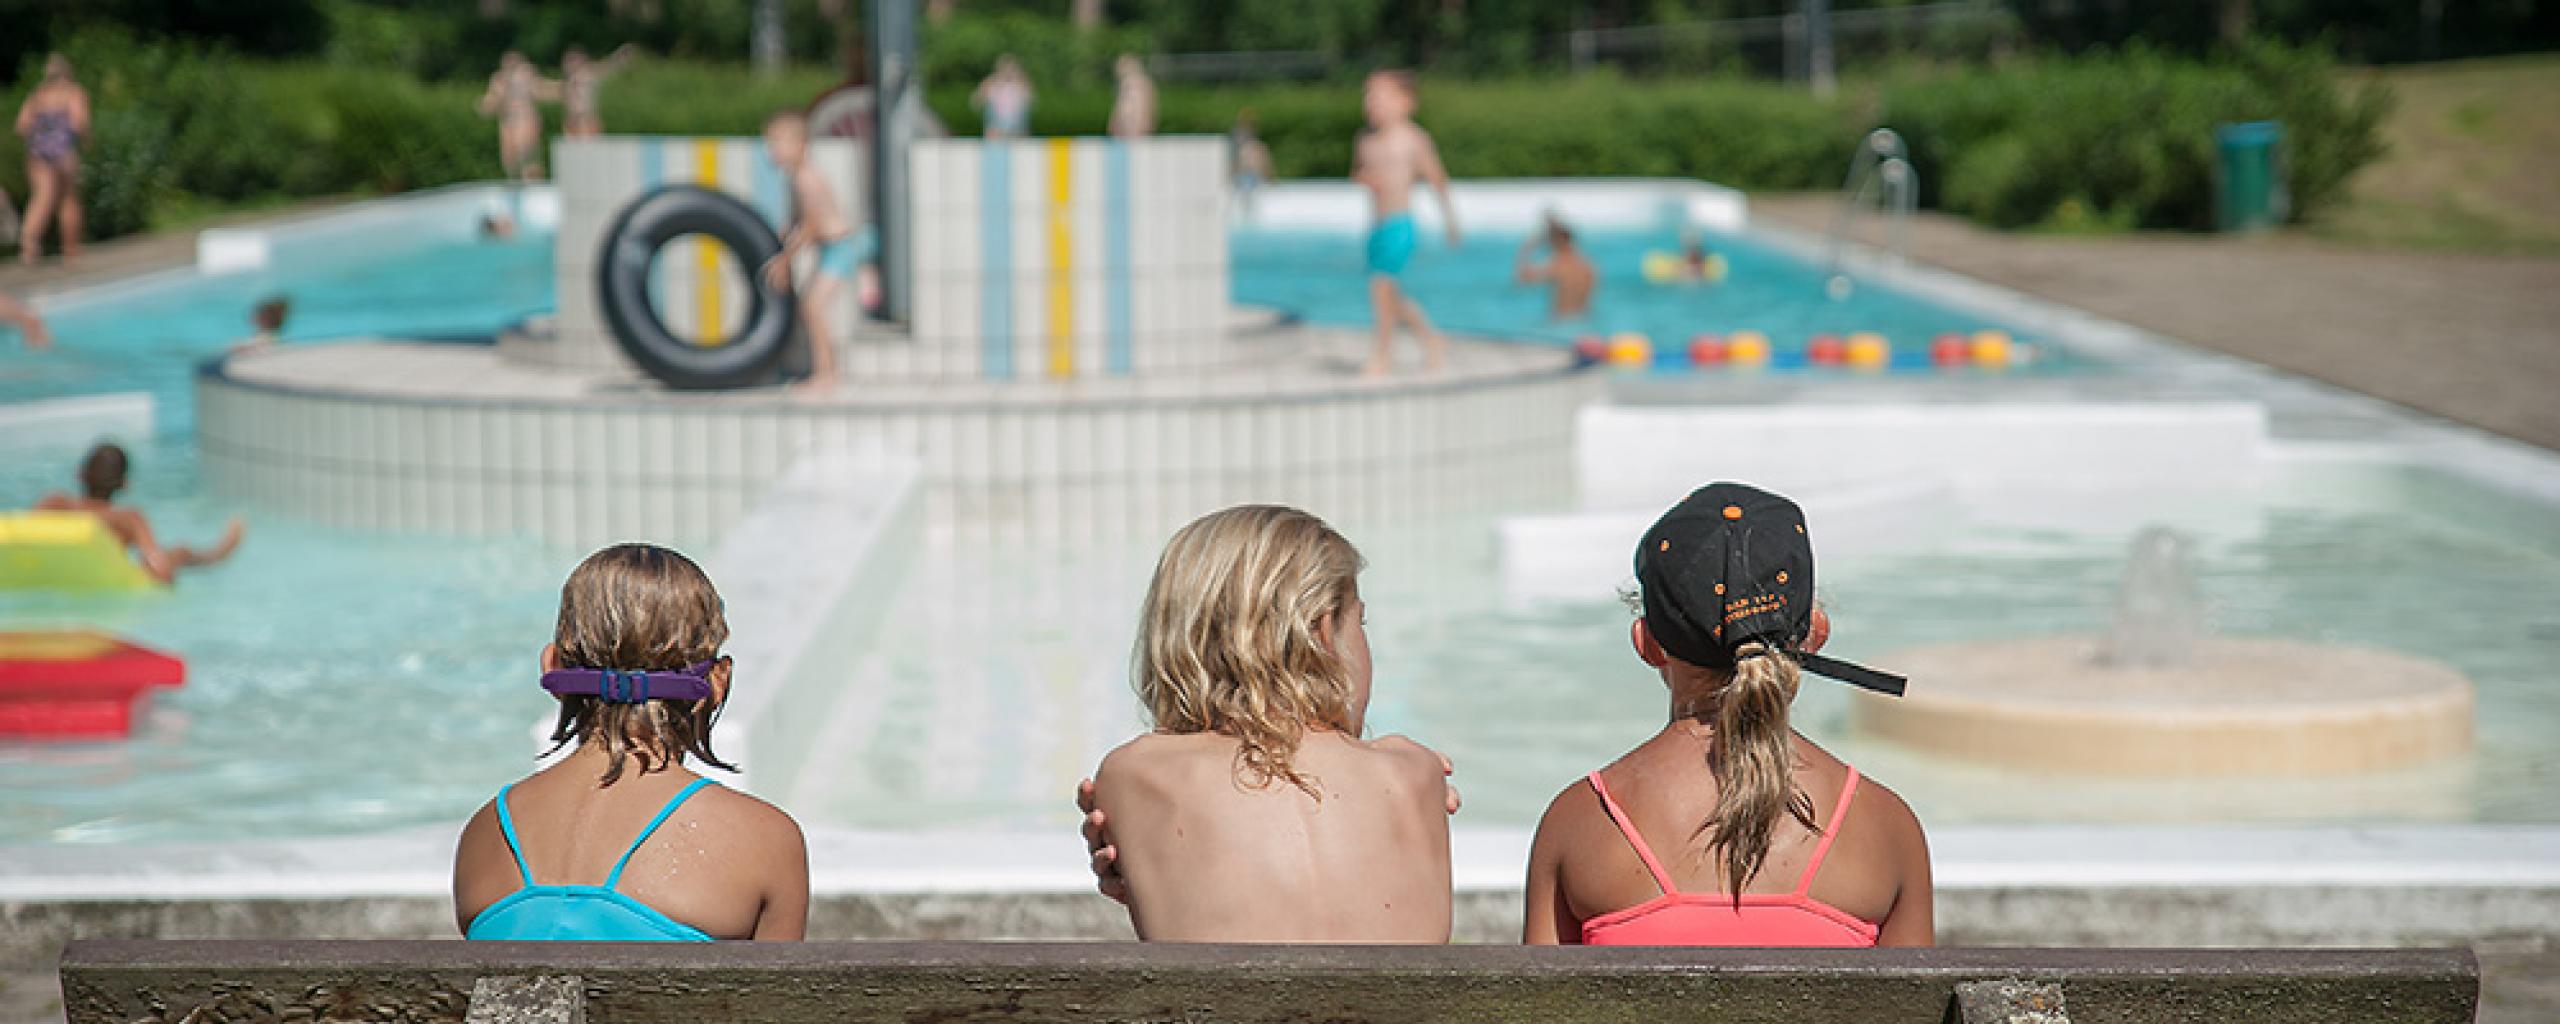 Drie meisjes in zwemkleding op een bankje. We zien de meisjes van de achterkant. Ze kijken uit op zwembad 't Sweeltje.